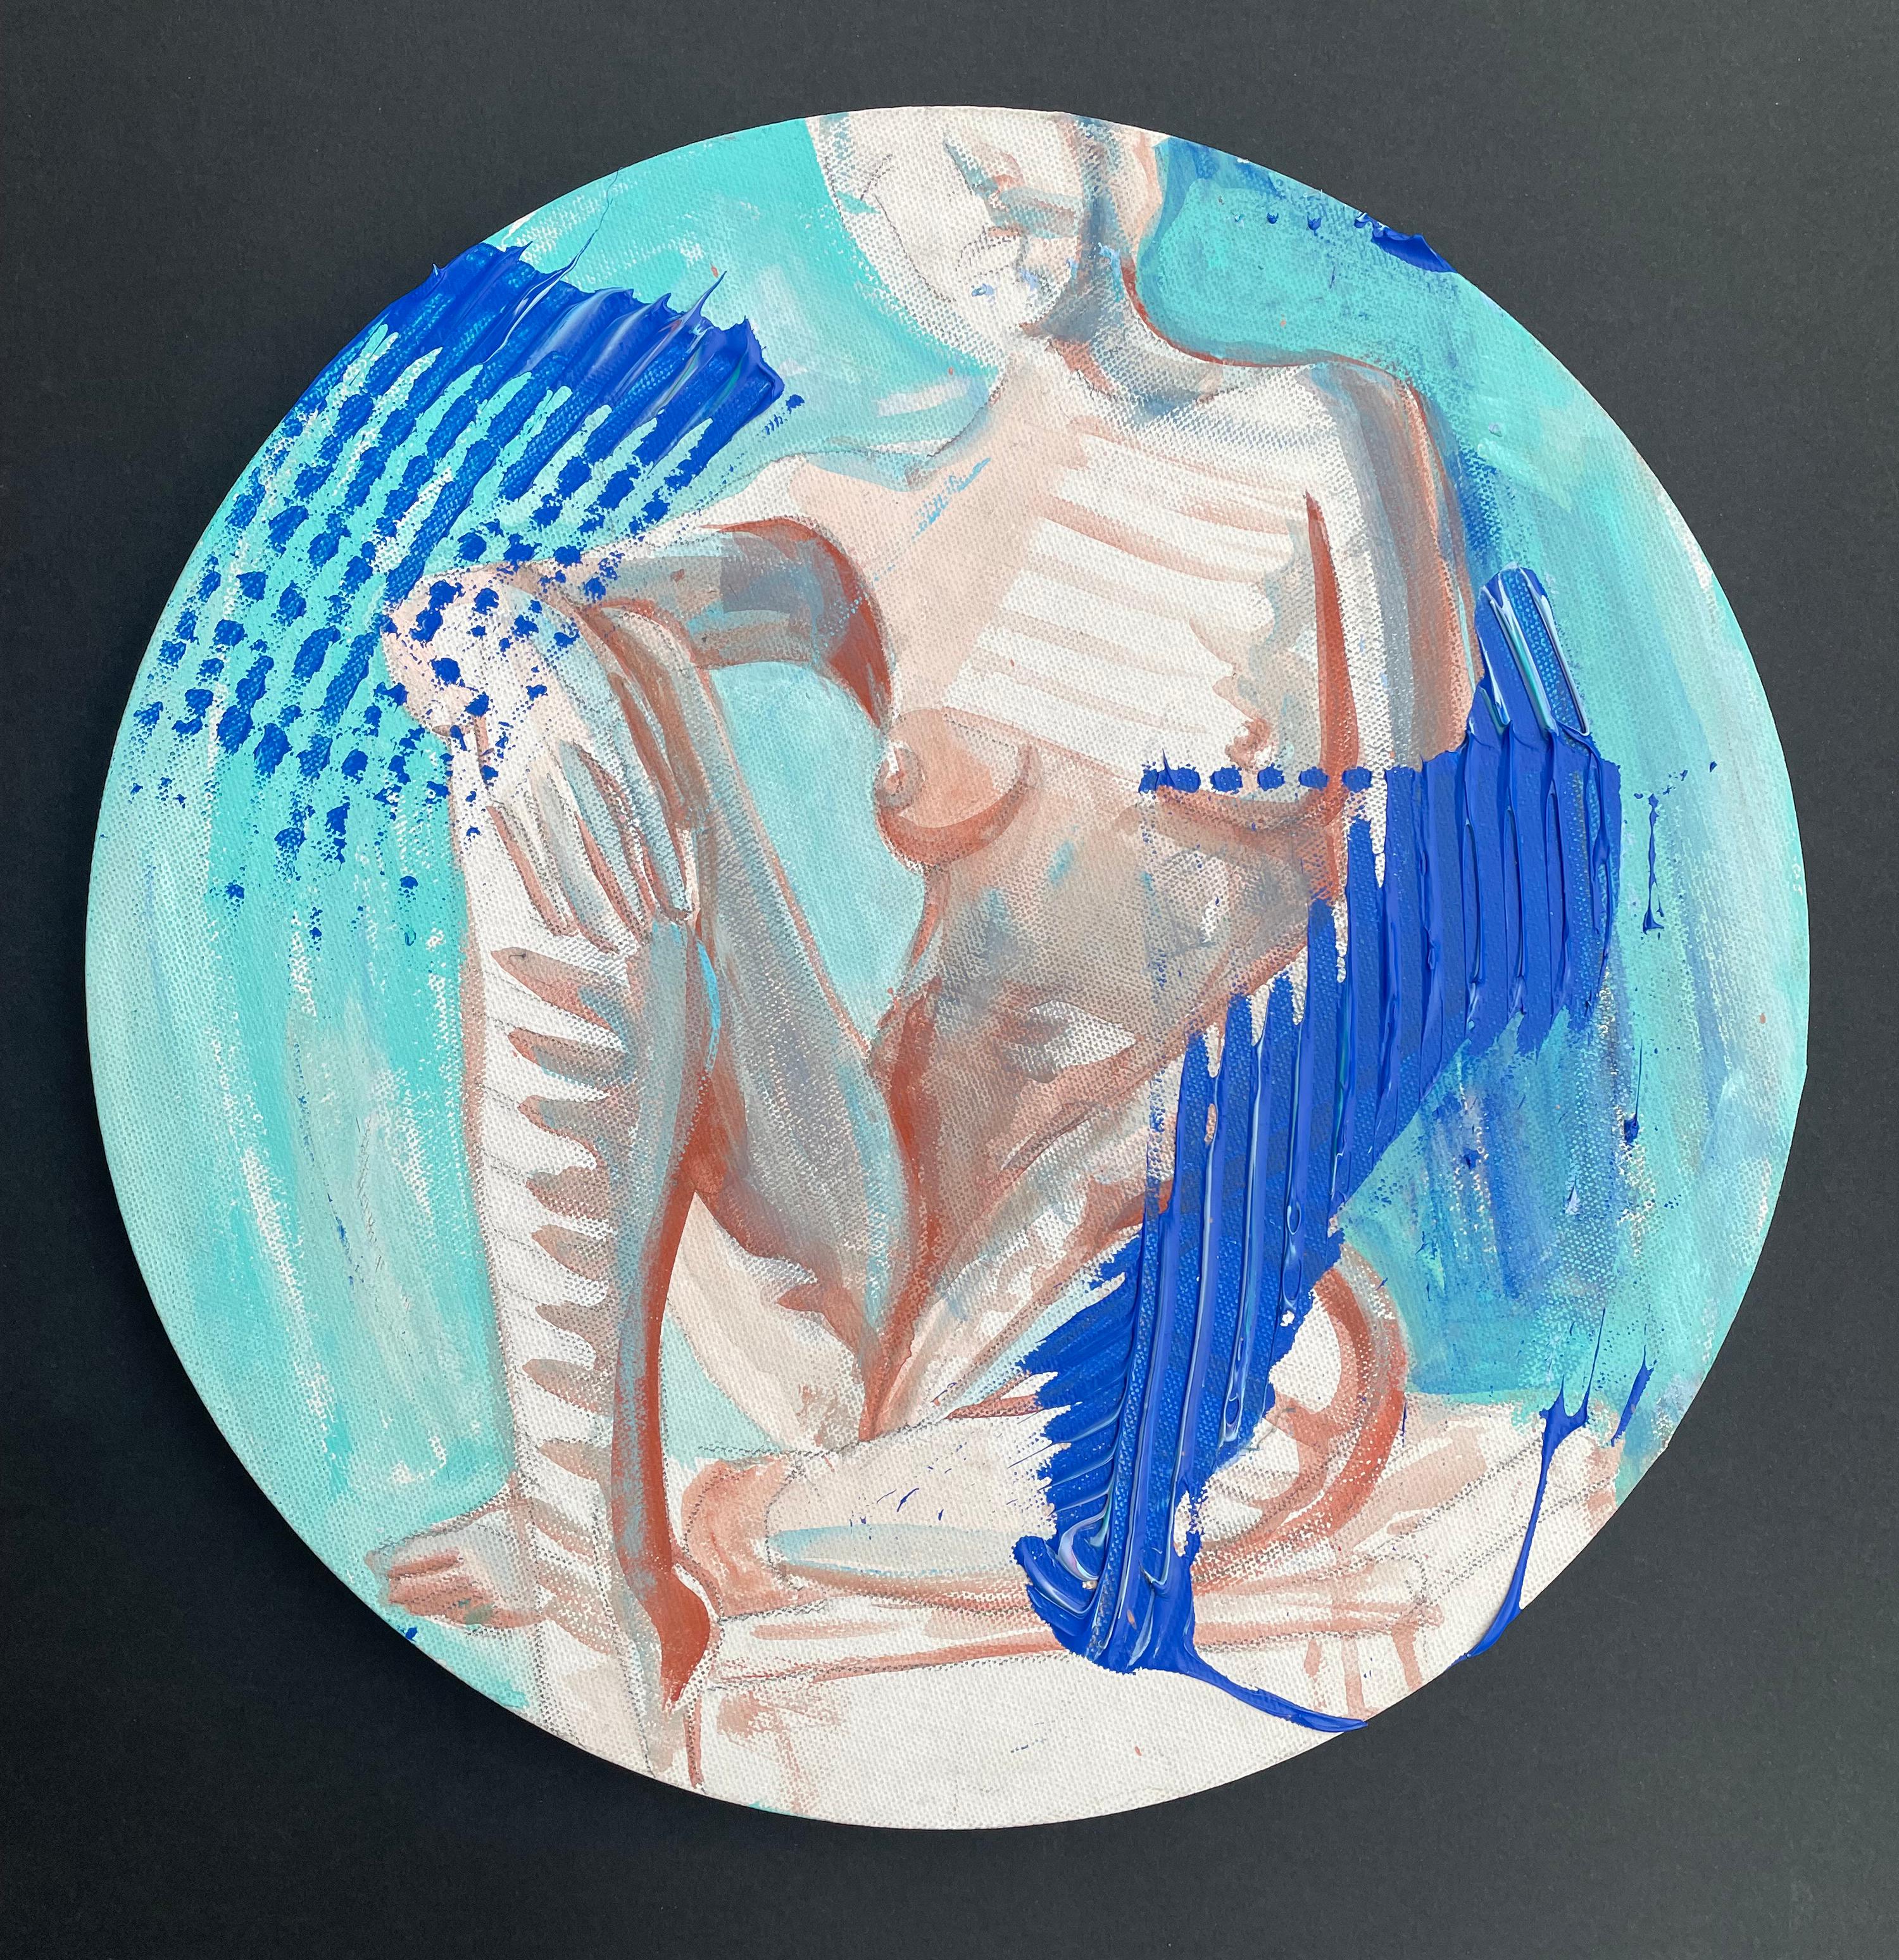 Une partie de ma série sur le nu.
"L'été bleu" dans l'après-midi, peinture de femme nue.
Rond, 40cm, / 15.7in diamètre.



Expédition directement du studio de l'artiste.

